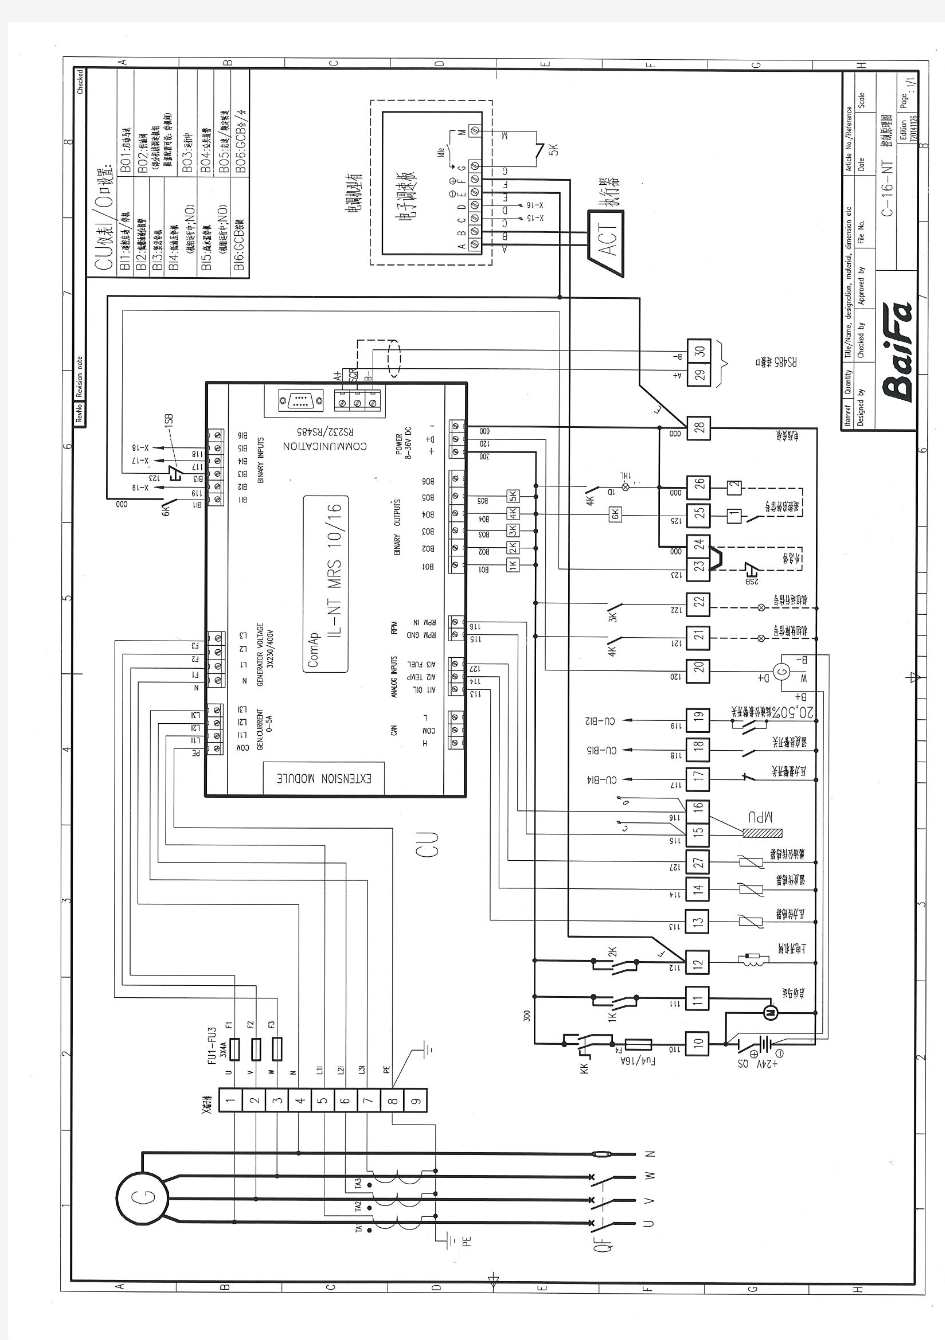 柴油发电机控制系统图(中文)